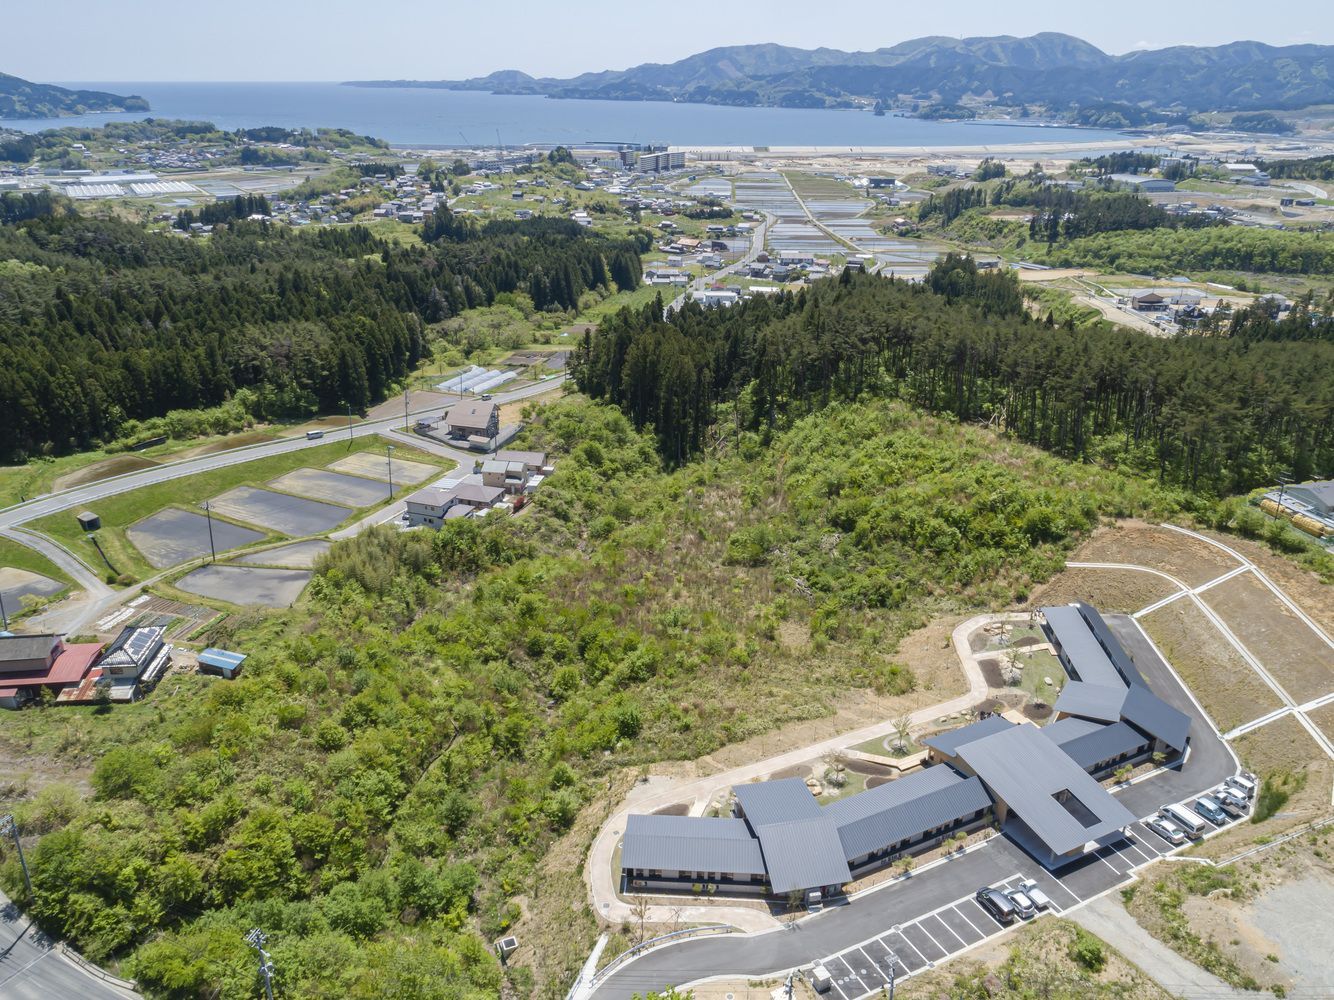 Житло для пенсіонерів: в Японії побудували доступні будинки для постраждалих від цунамі – фото